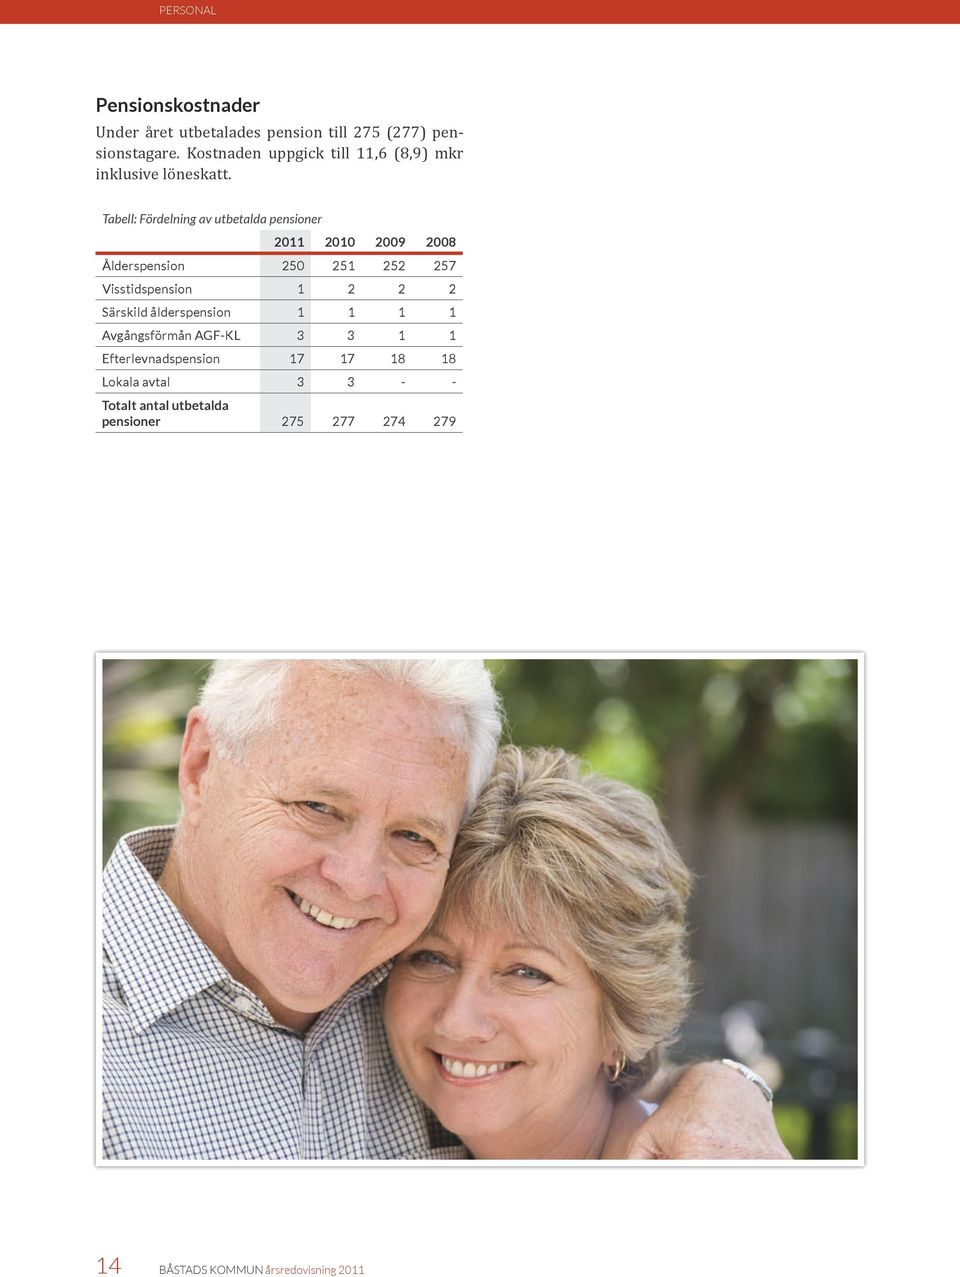 Tabell: Fördelning av utbetalda pensioner 2011 2010 2009 2008 Ålderspension 250 251 252 257 Visstidspension 1 2 2 2